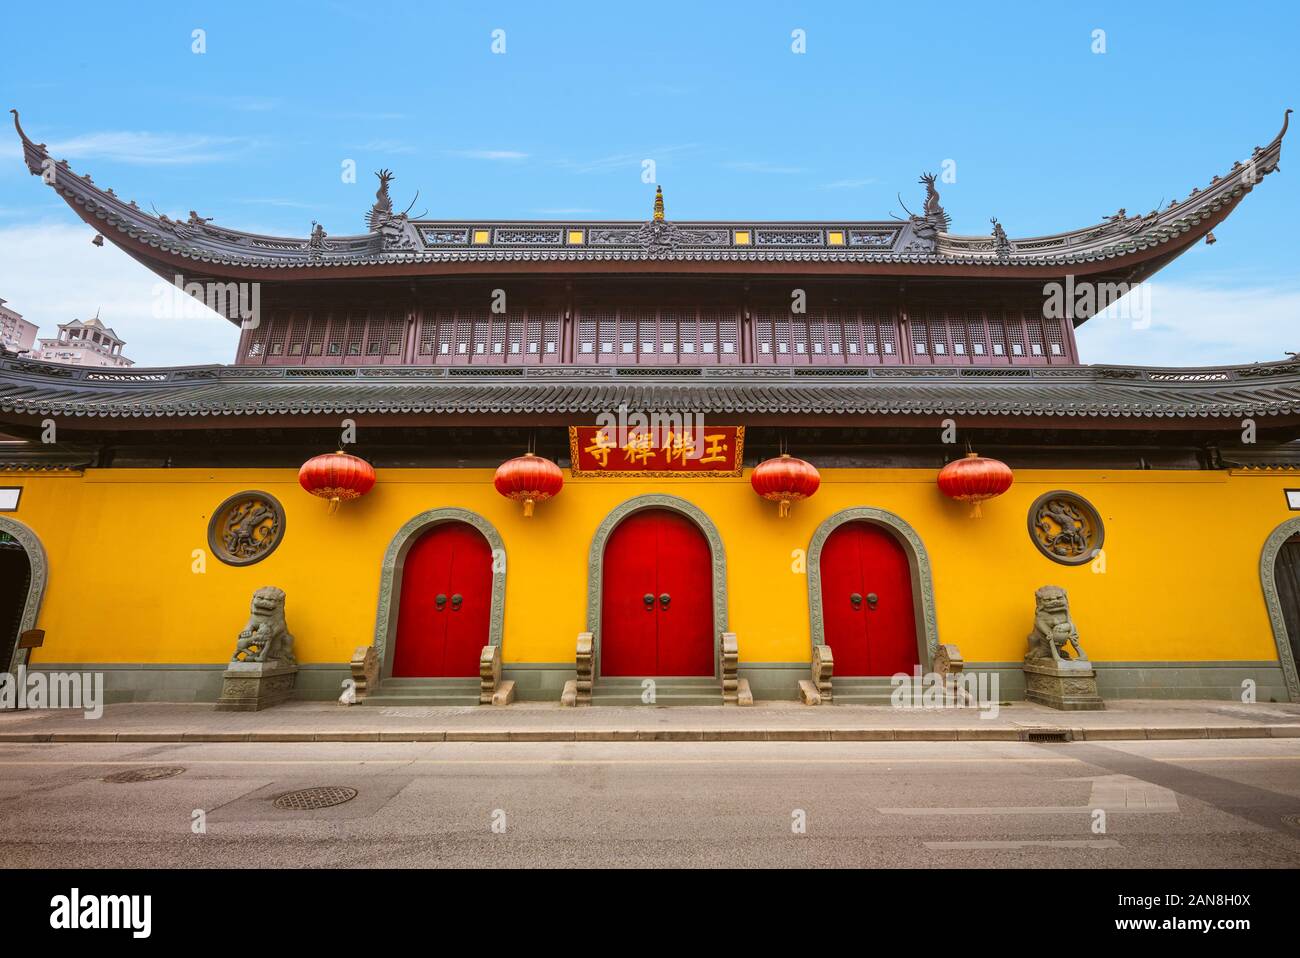 Jade Buddha Temple in shanghai, China. Stock Photo